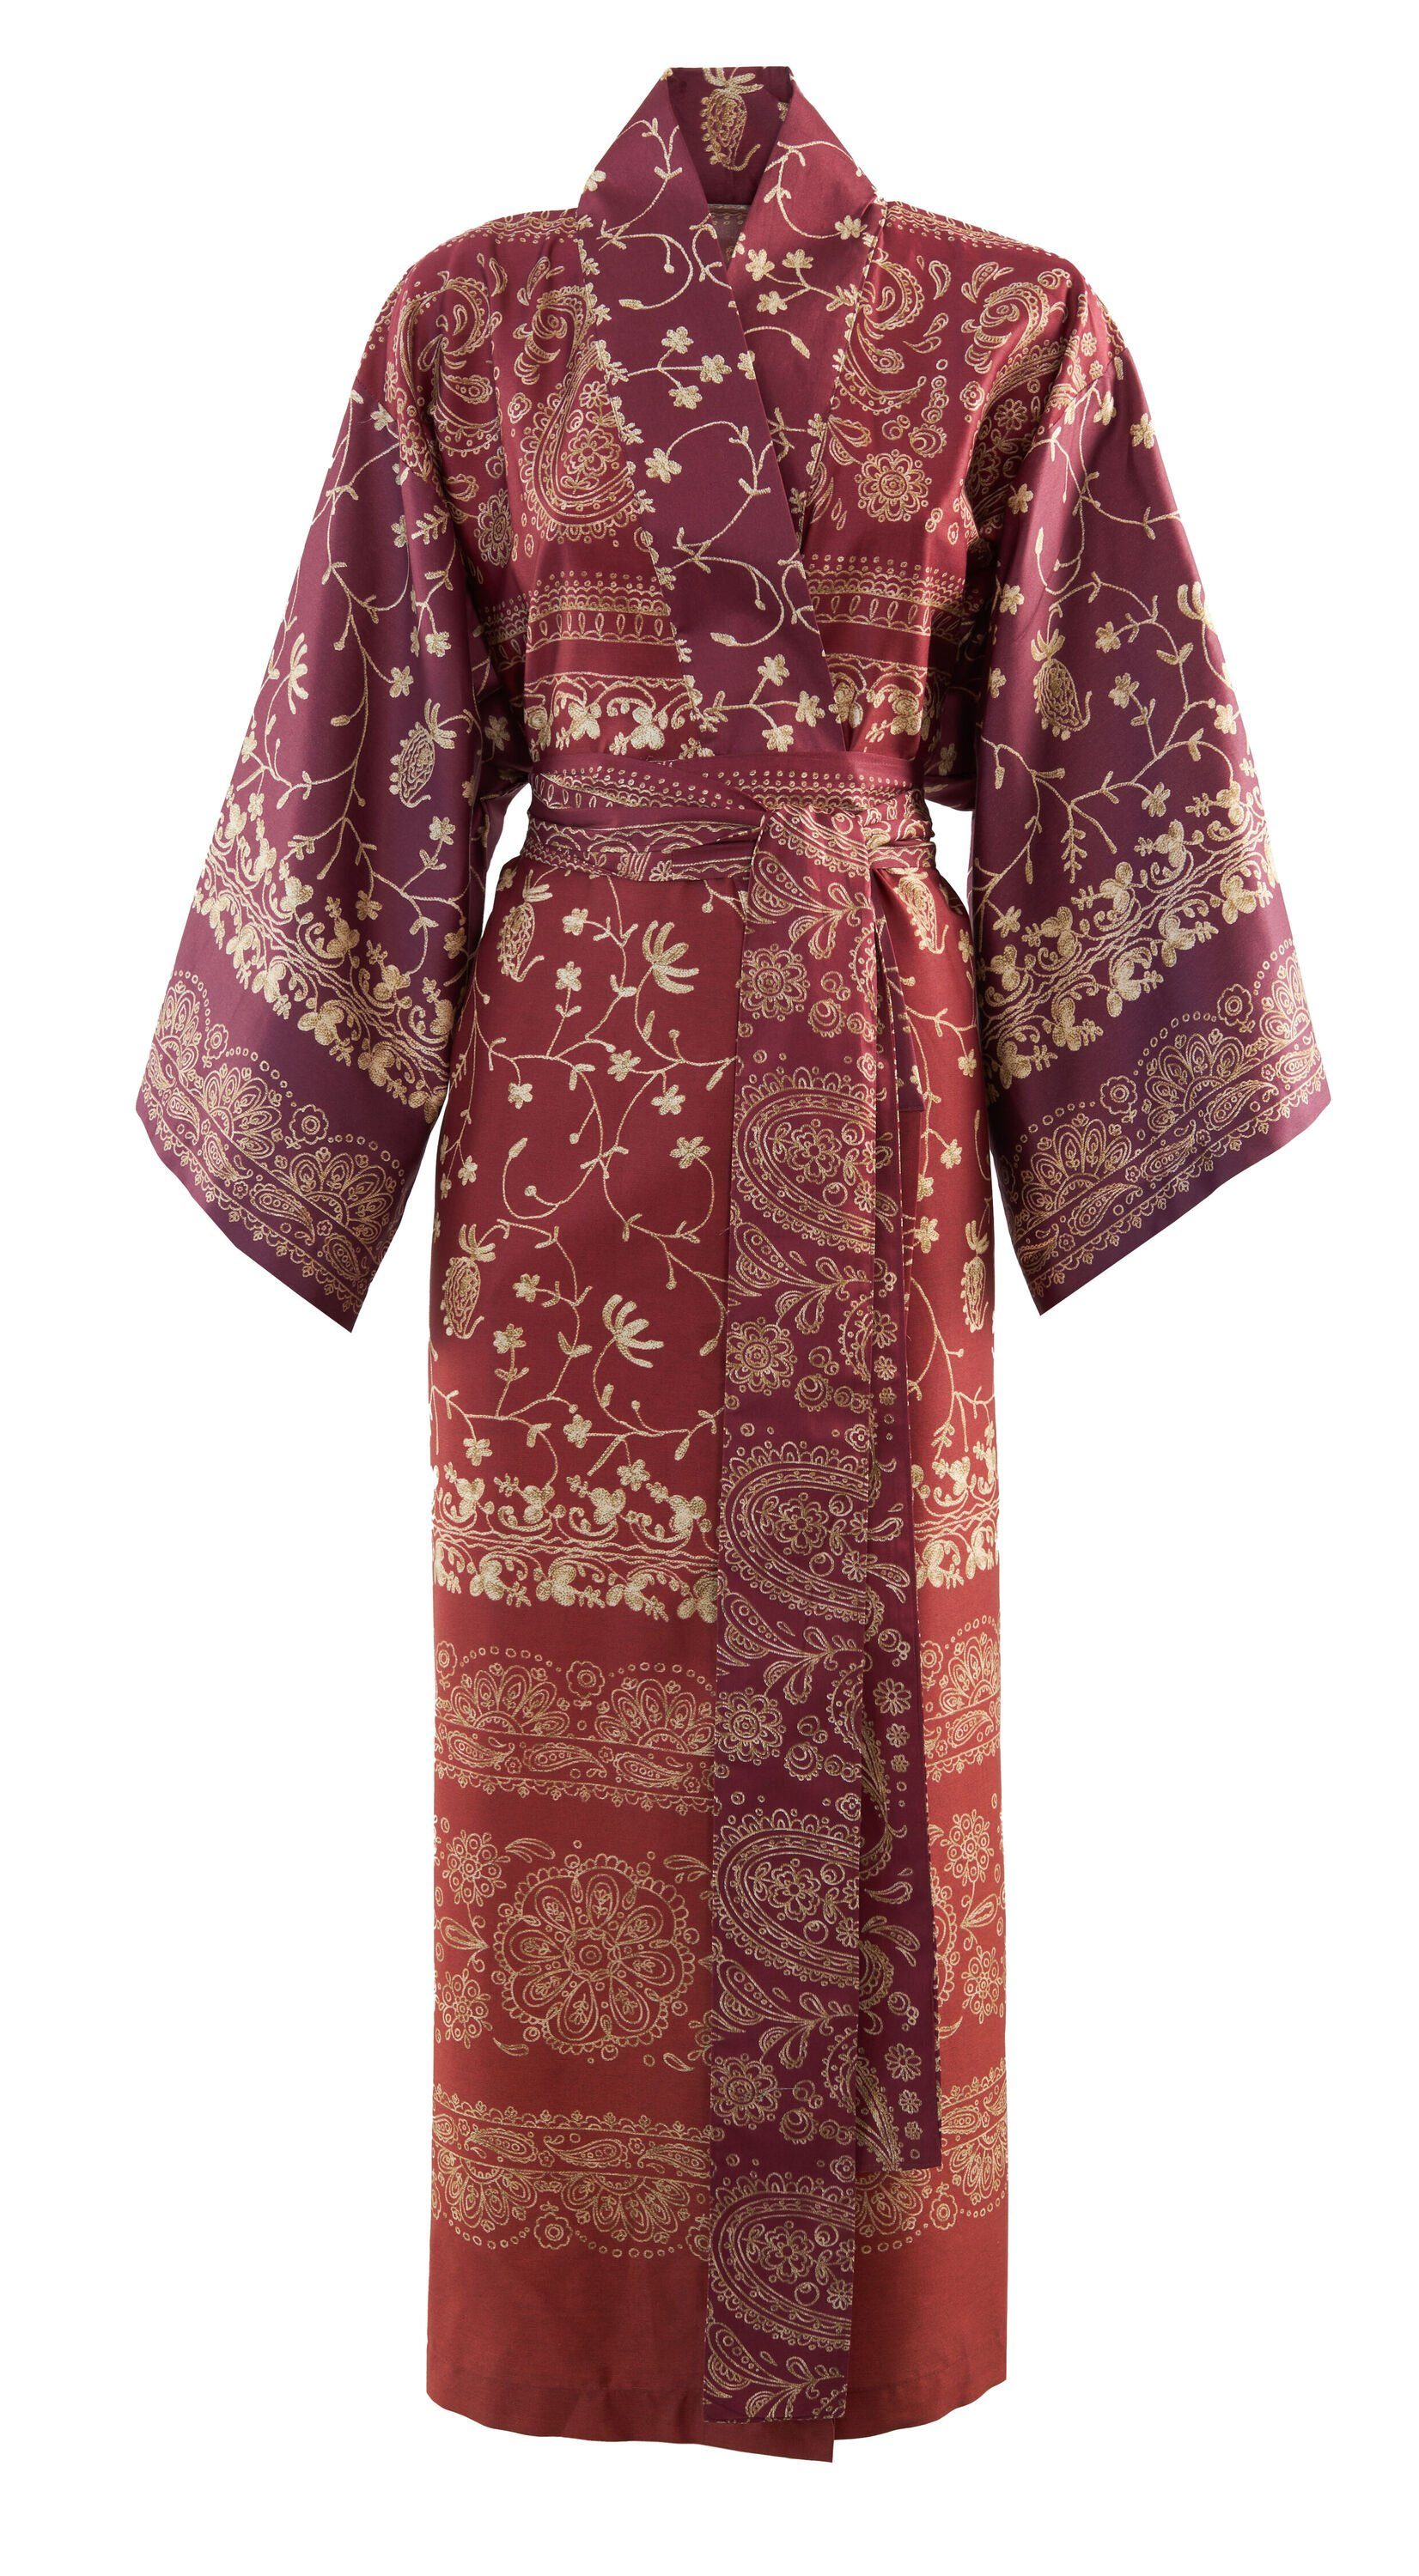 satinierter Kimono BRENTA, Muster, RUBINROT Baumwolle, knieumspielend, modernem Baumwolle aus Gürtel, Bassetti mit